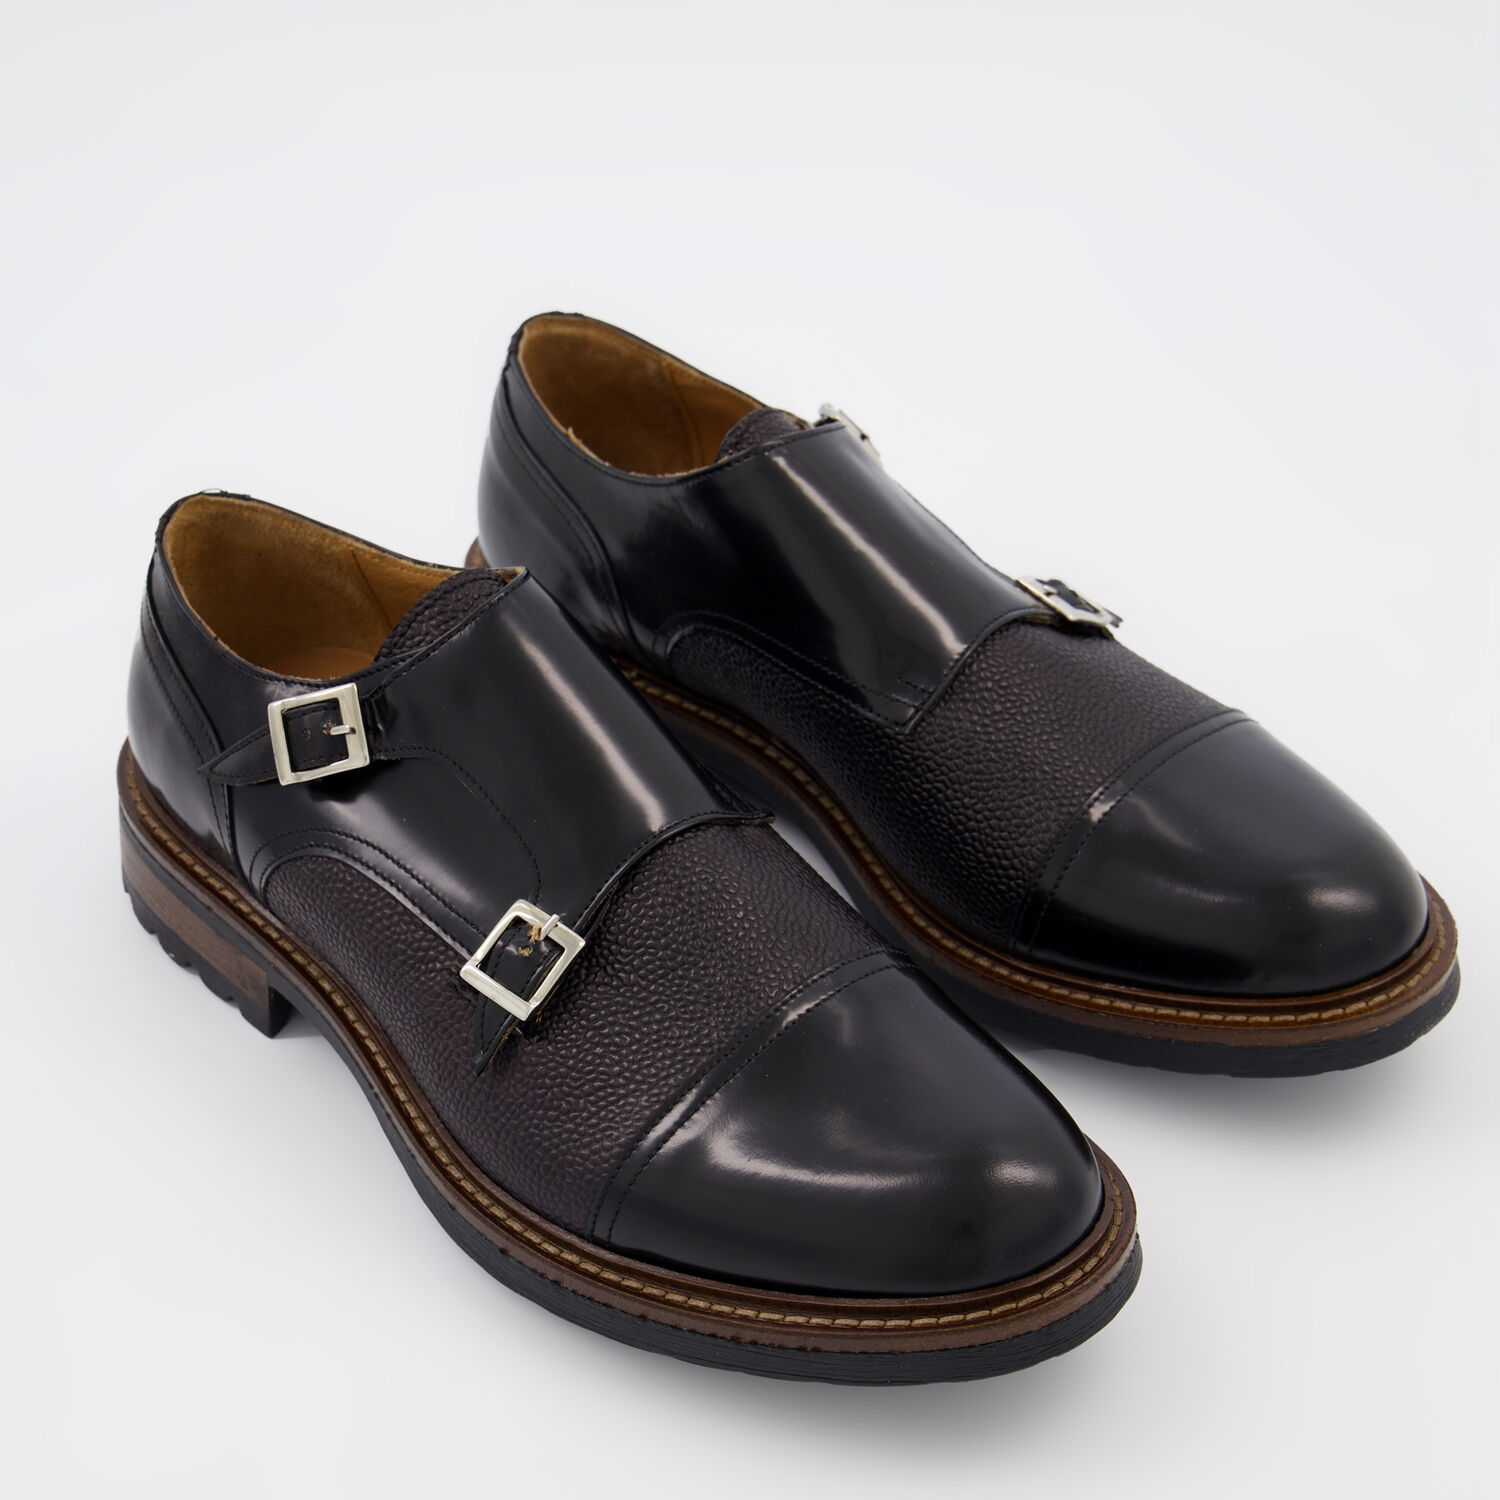 Black Leather Monk Shoes - TK Maxx UK